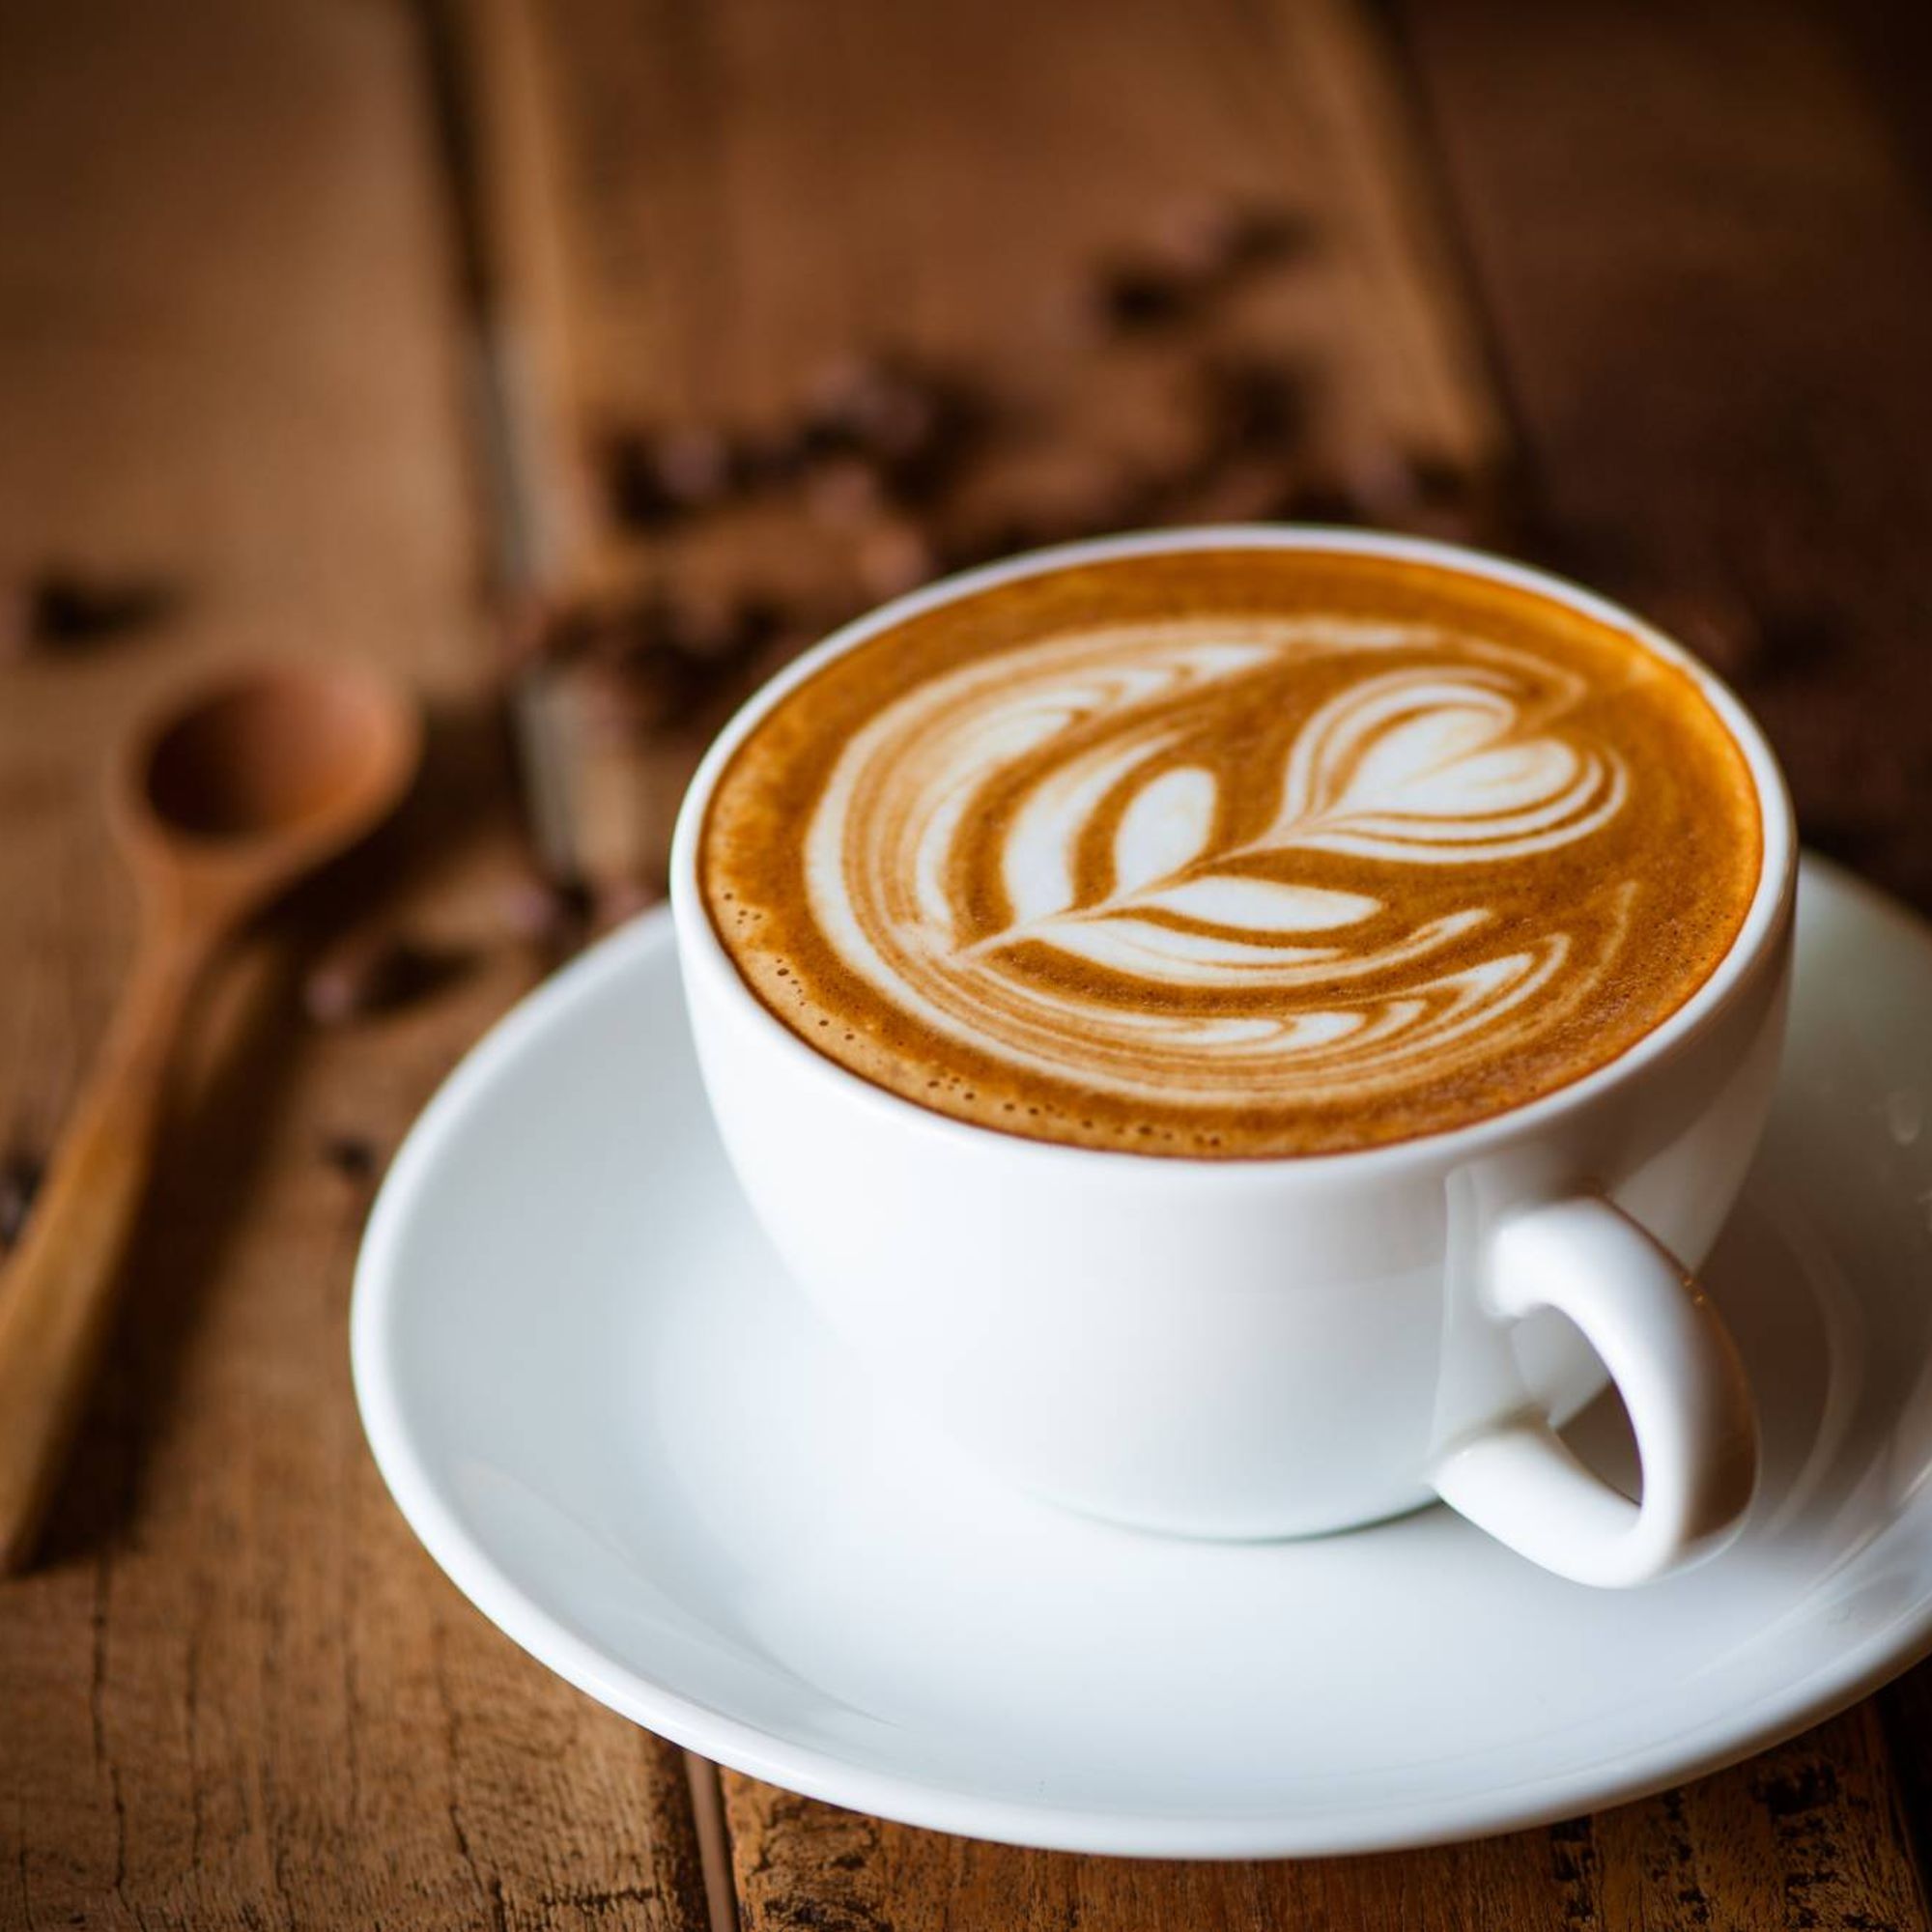 Krups Dolce Gusto : la nouvelle machine à café écolo est à 70 euros de  remise chez